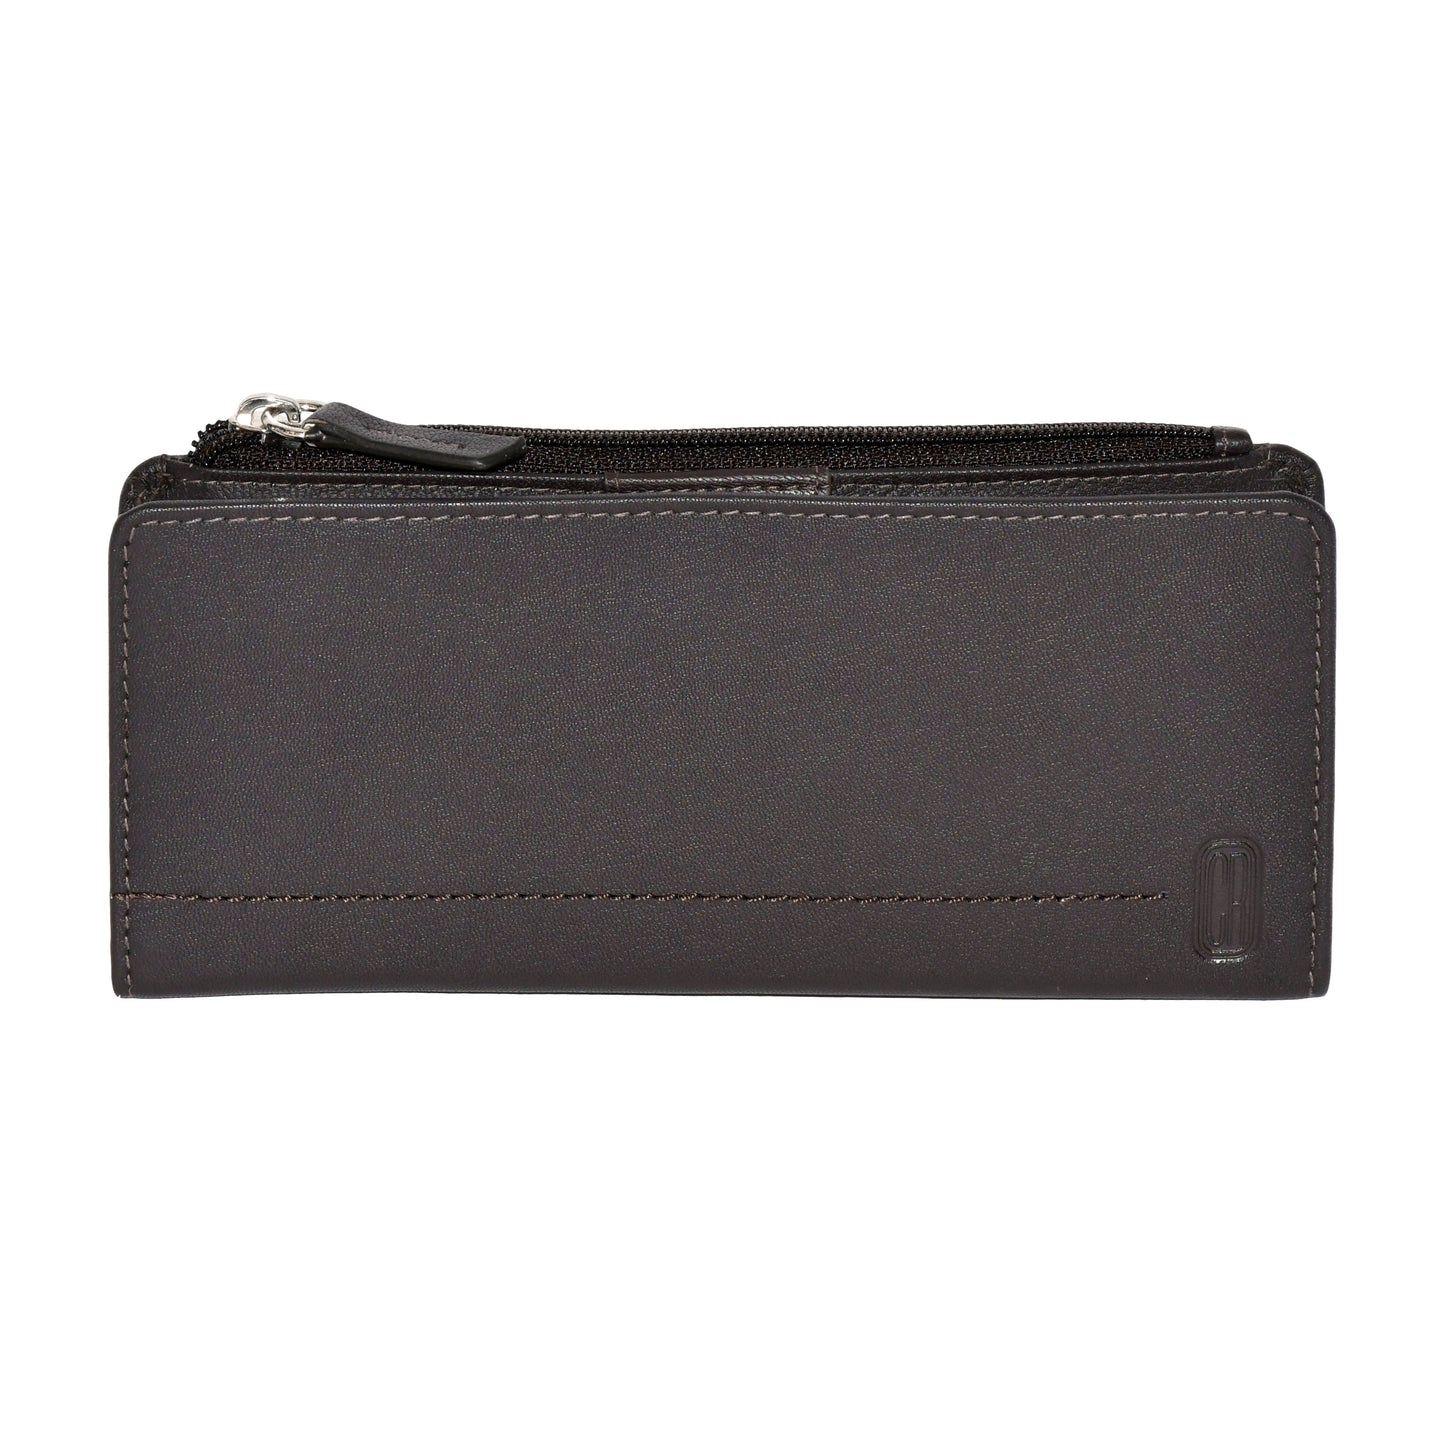 Ladies' Slim Clutch Wallet With Top Zipper